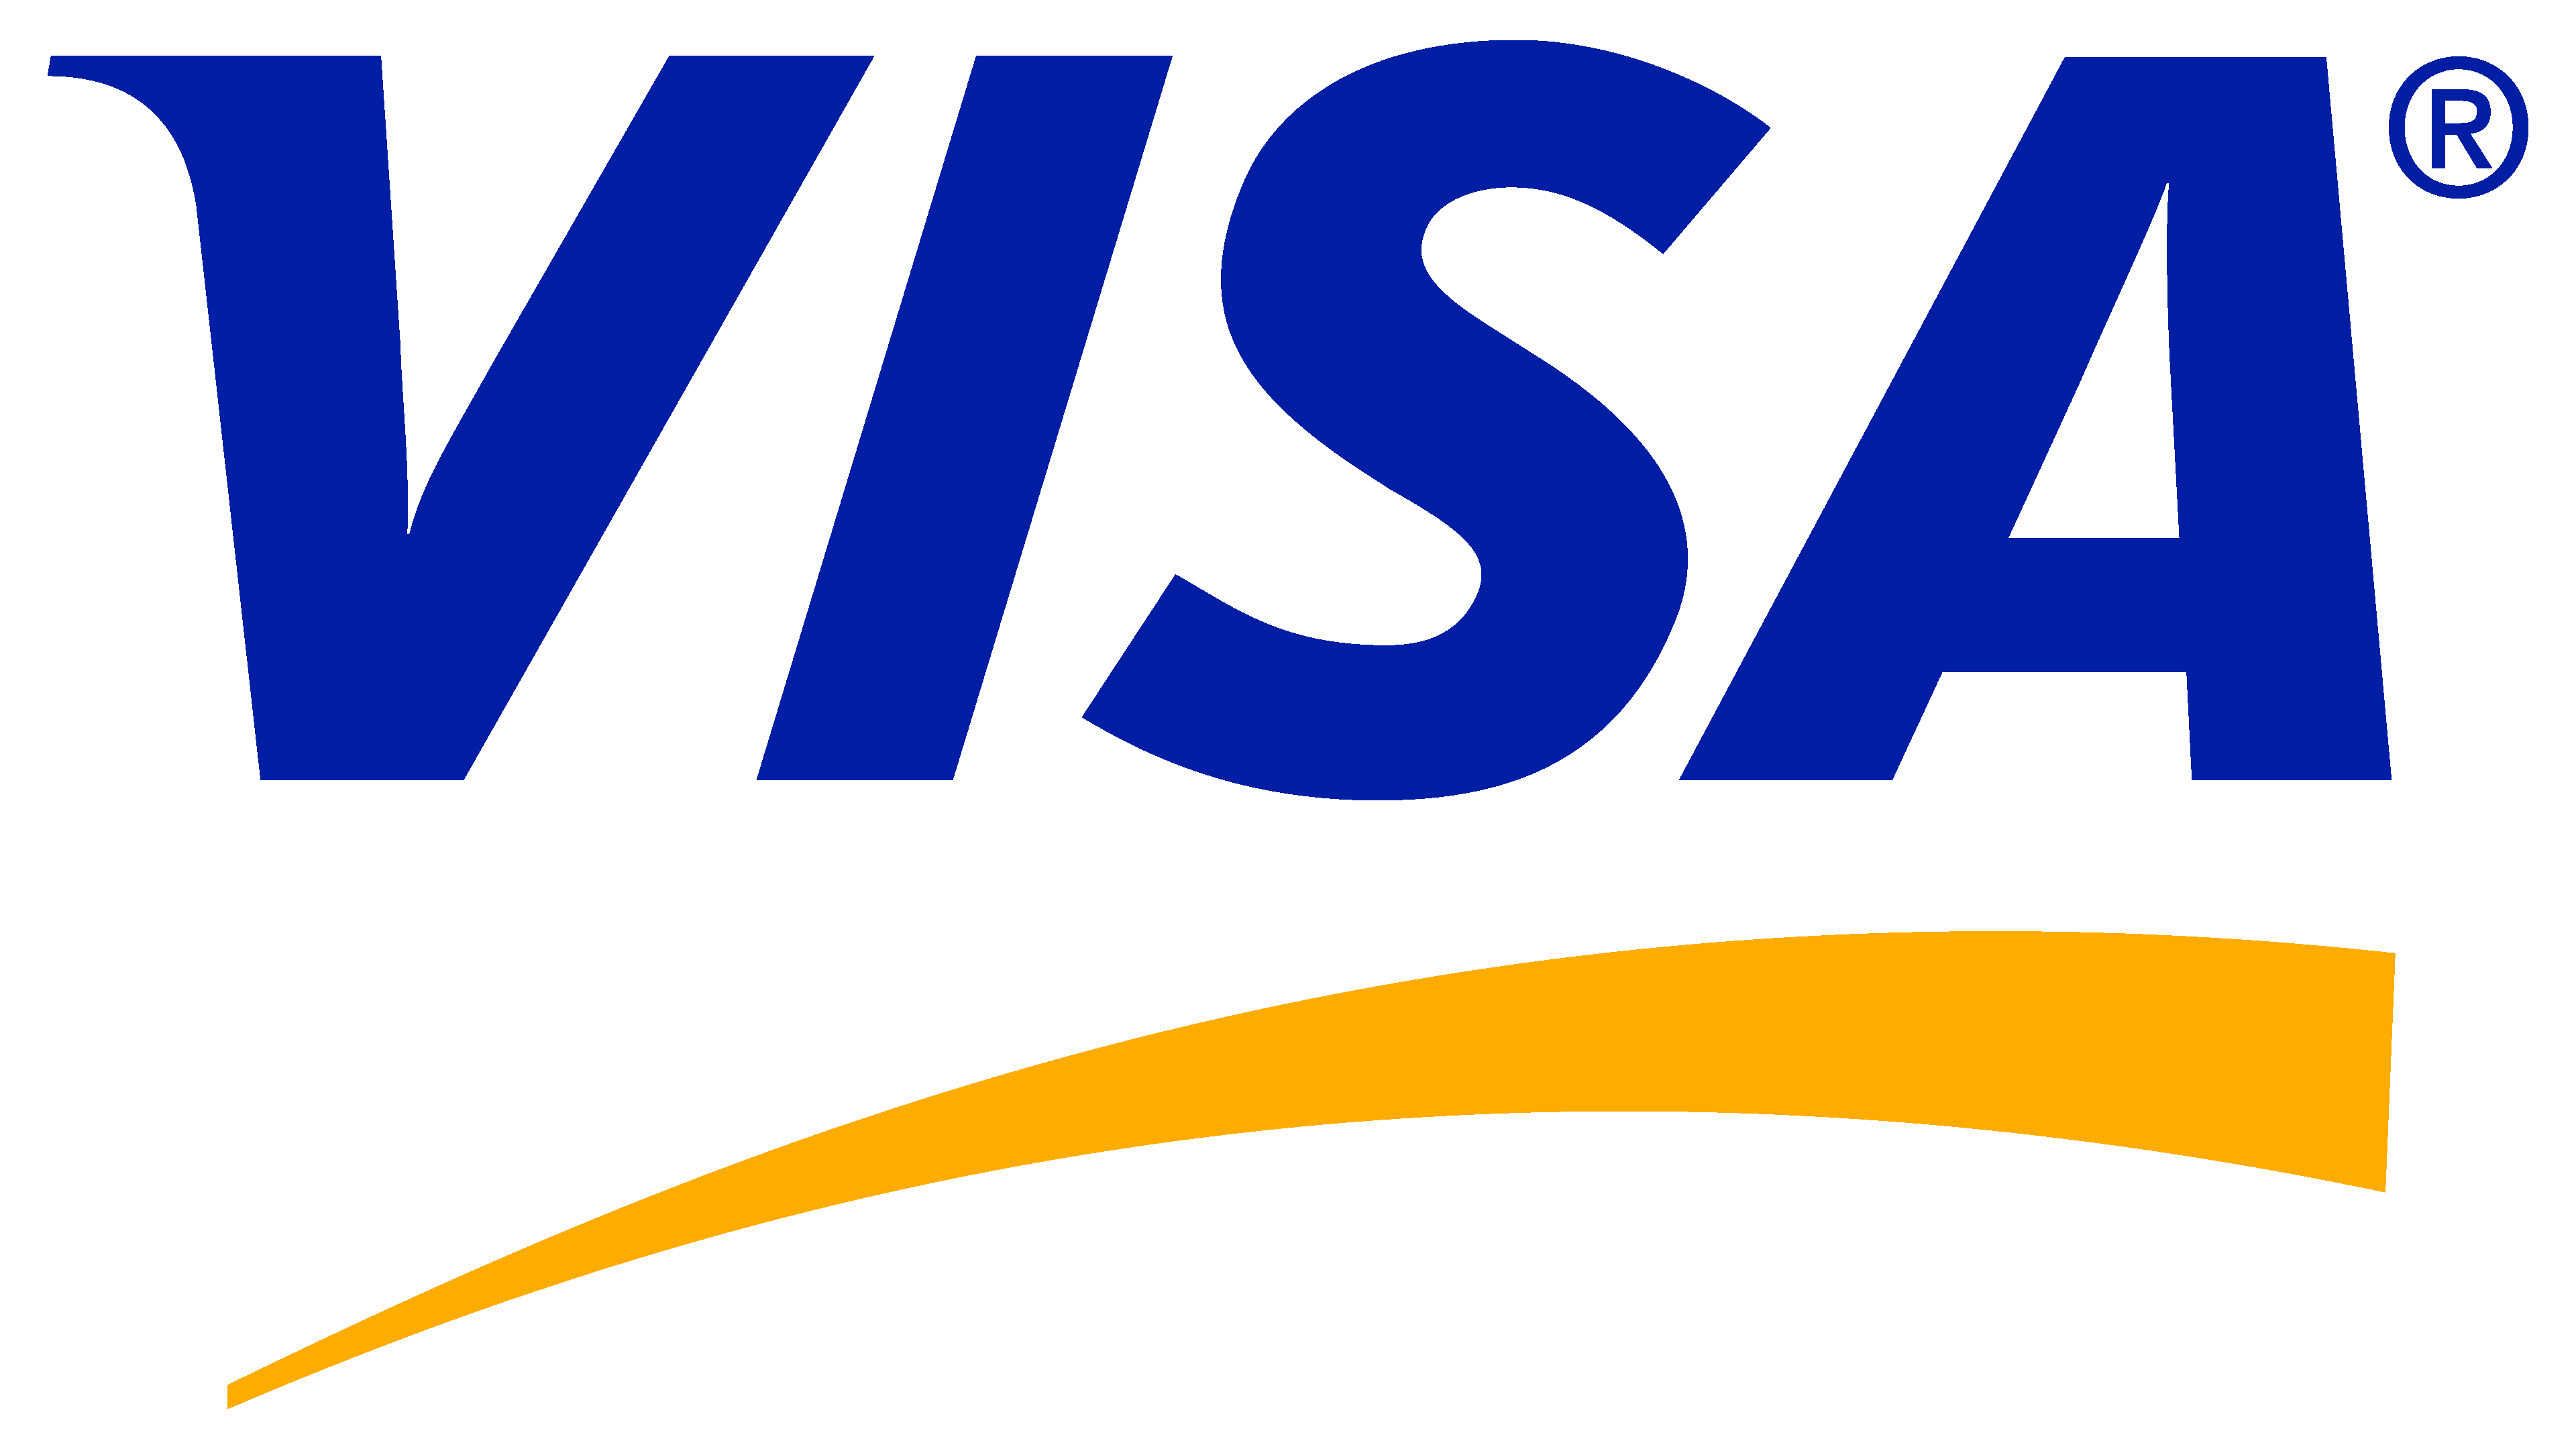 visit visa logo